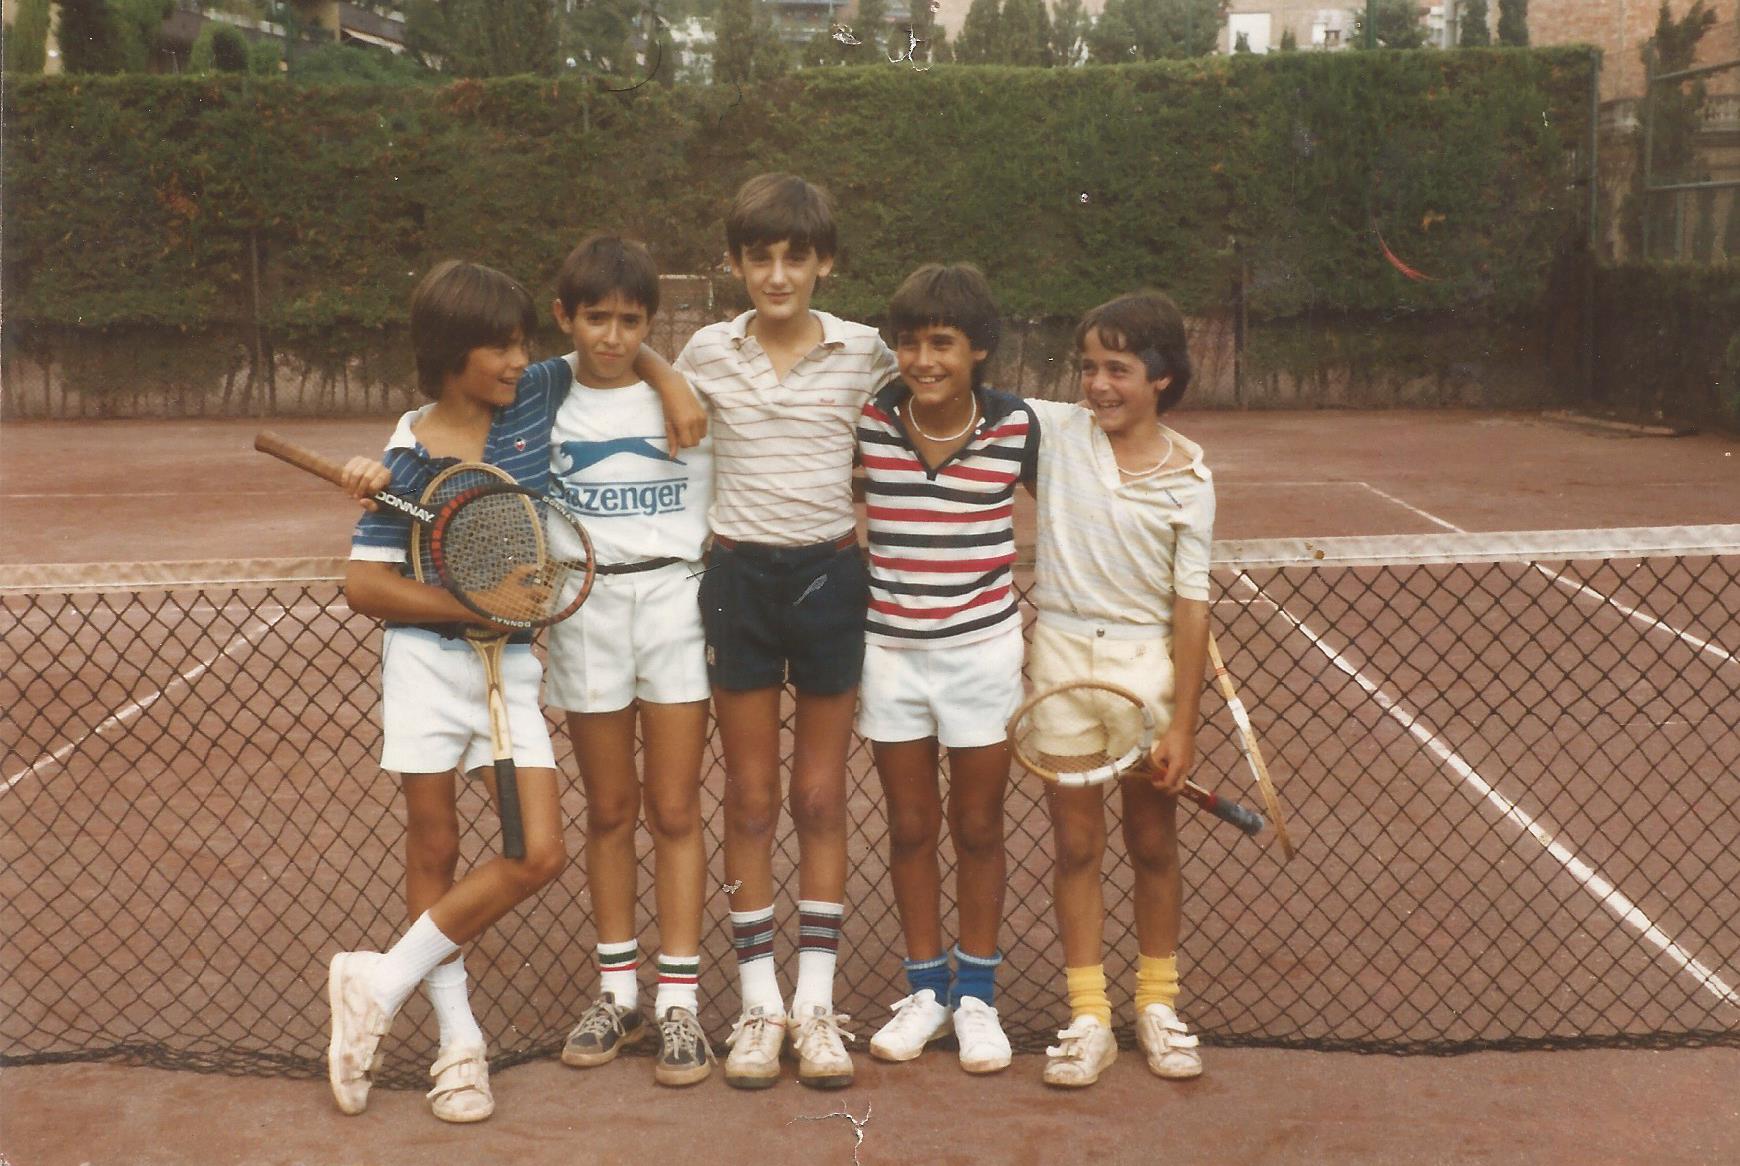 Alguno de los cinco soy yo (se admiten apuestas). El primero por la derecha es Alex Corretja, que llegaría al top ten de la ATP. Imagen tomada en el Club de Tenis La Salud de Barcelona, en 1981 (creo).  